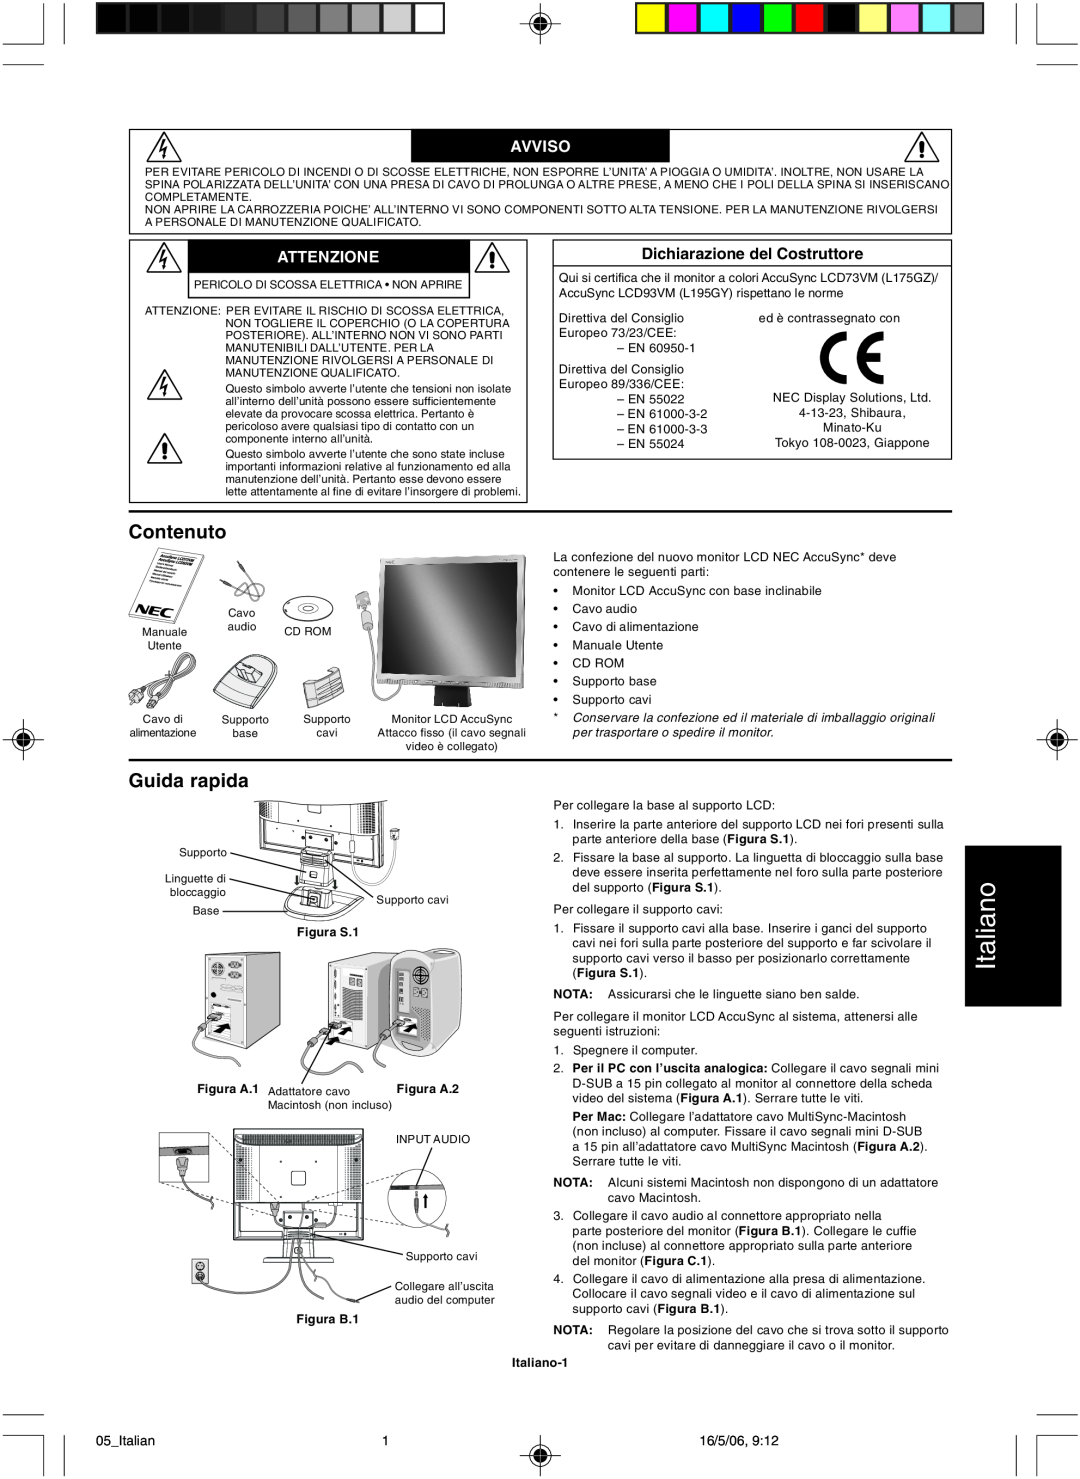 NEC LCD73VM user manual Contenuto, Guida rapida, Avviso, Attenzione, Italiano 